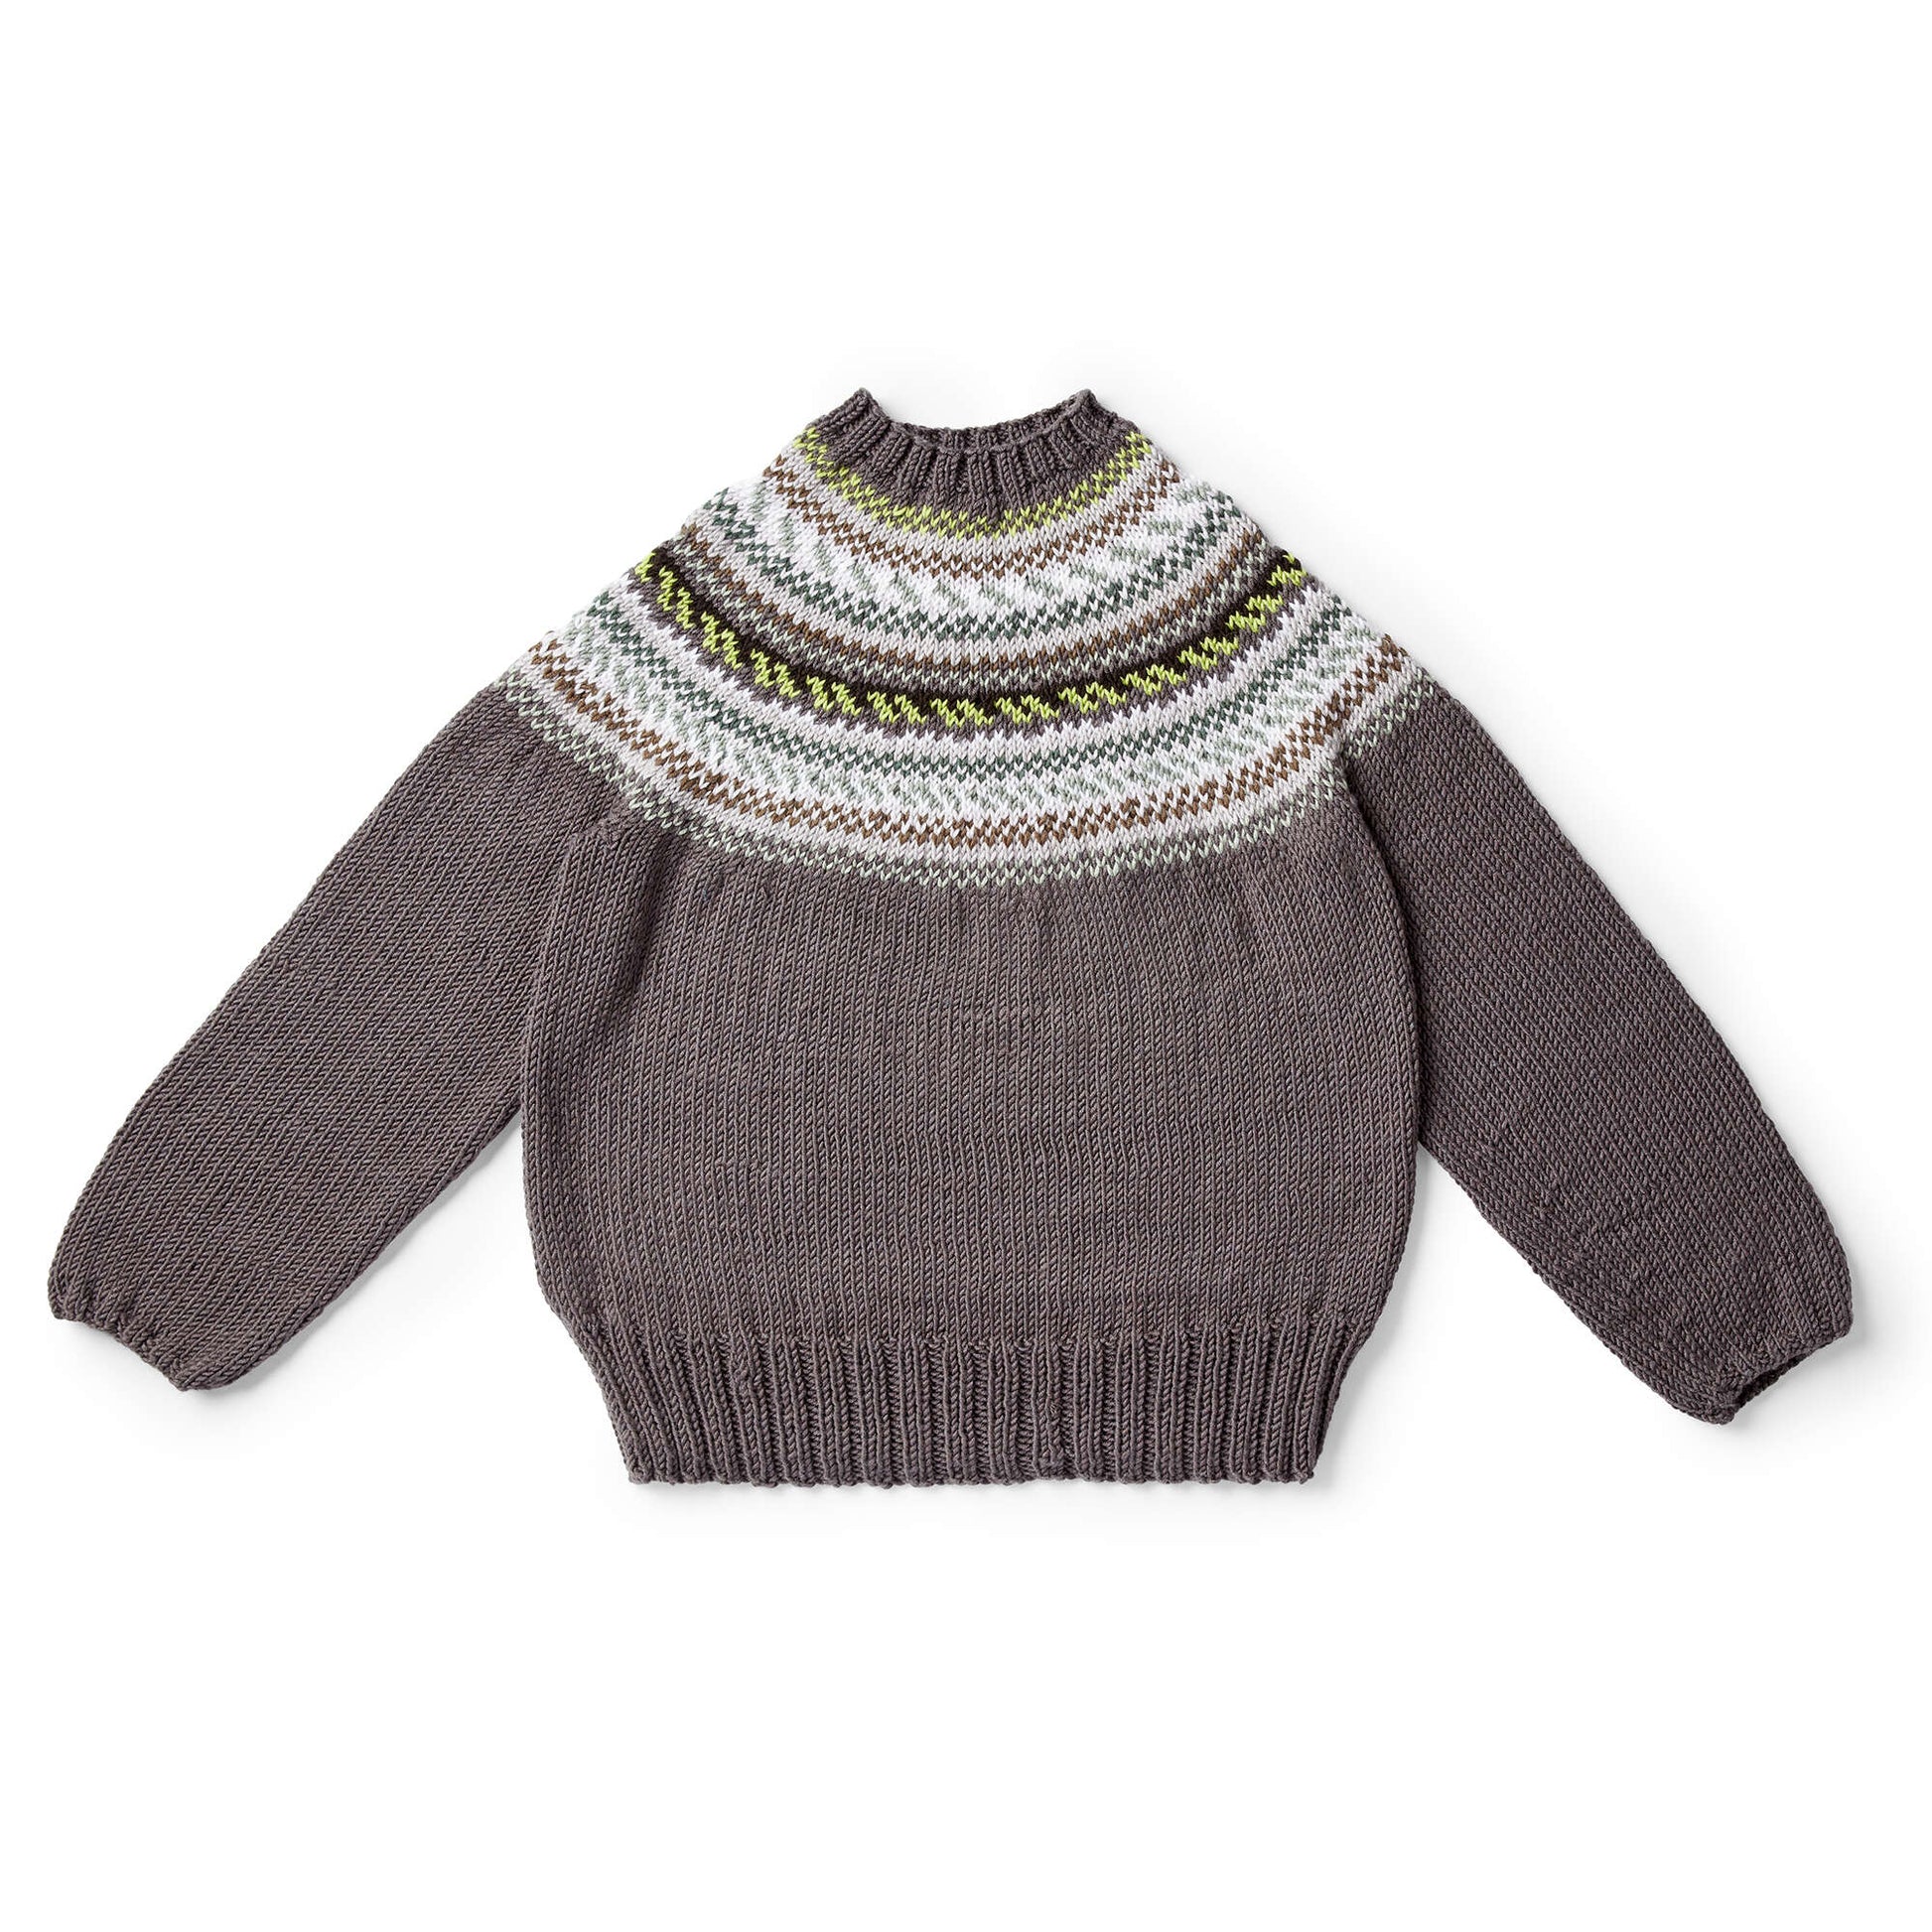 Free Caron St Lawrence Knit Yoke Sweater Pattern